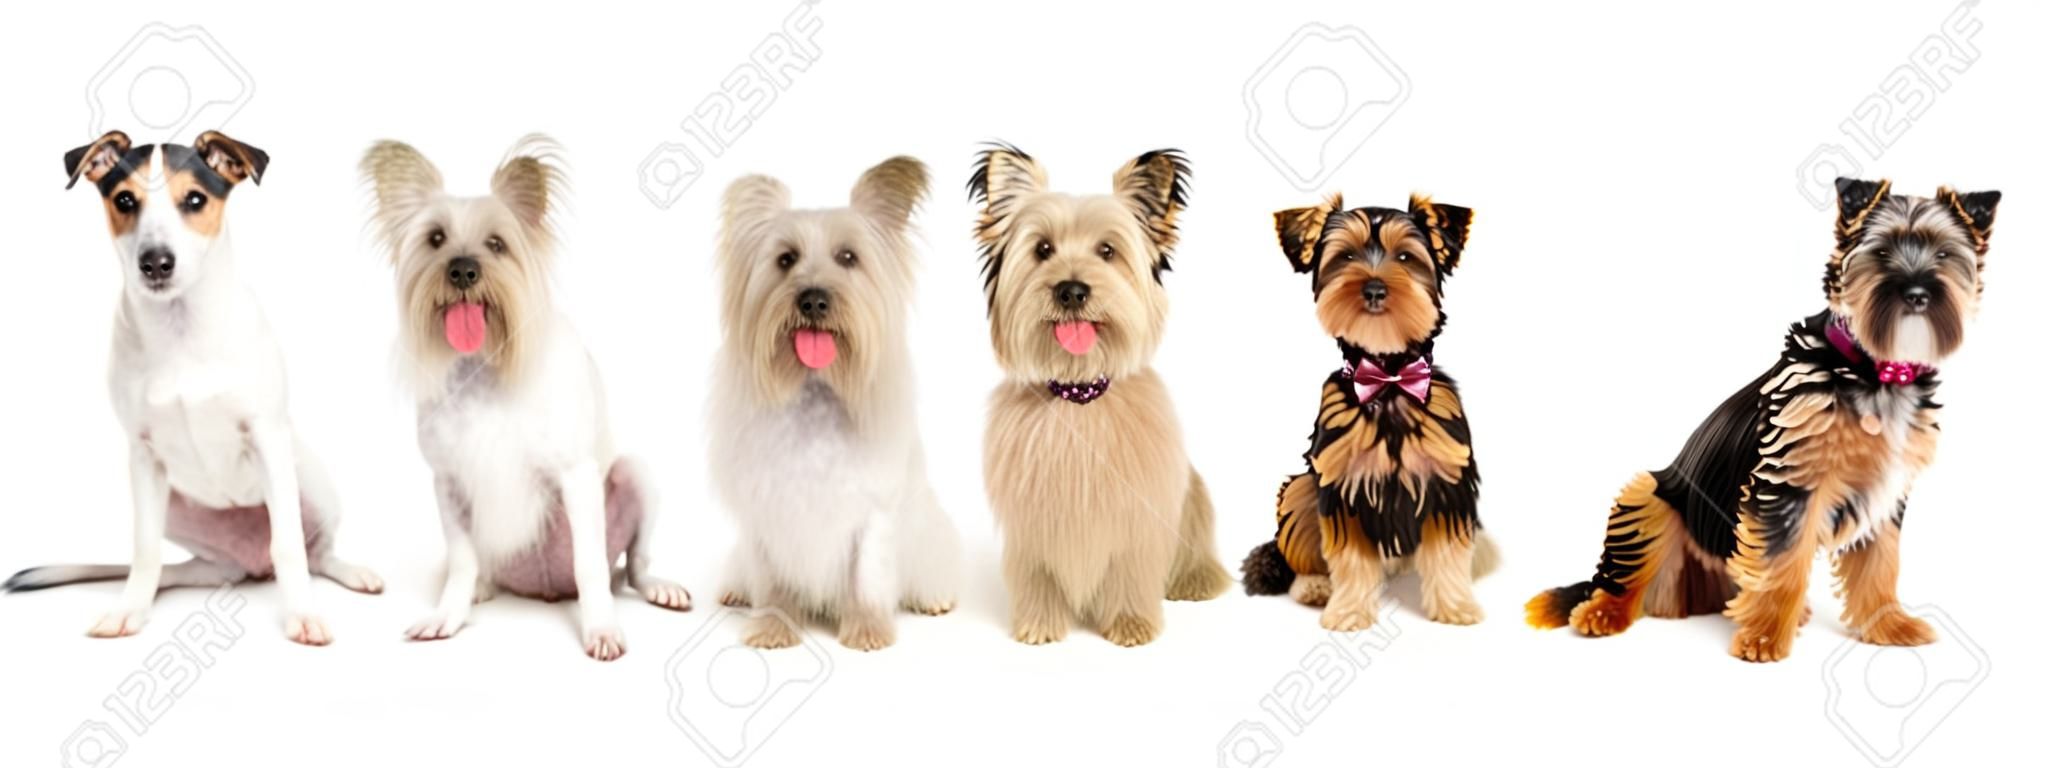 Eine Reihe von sechs Hunde kleiner Rassen zusammen sitzen